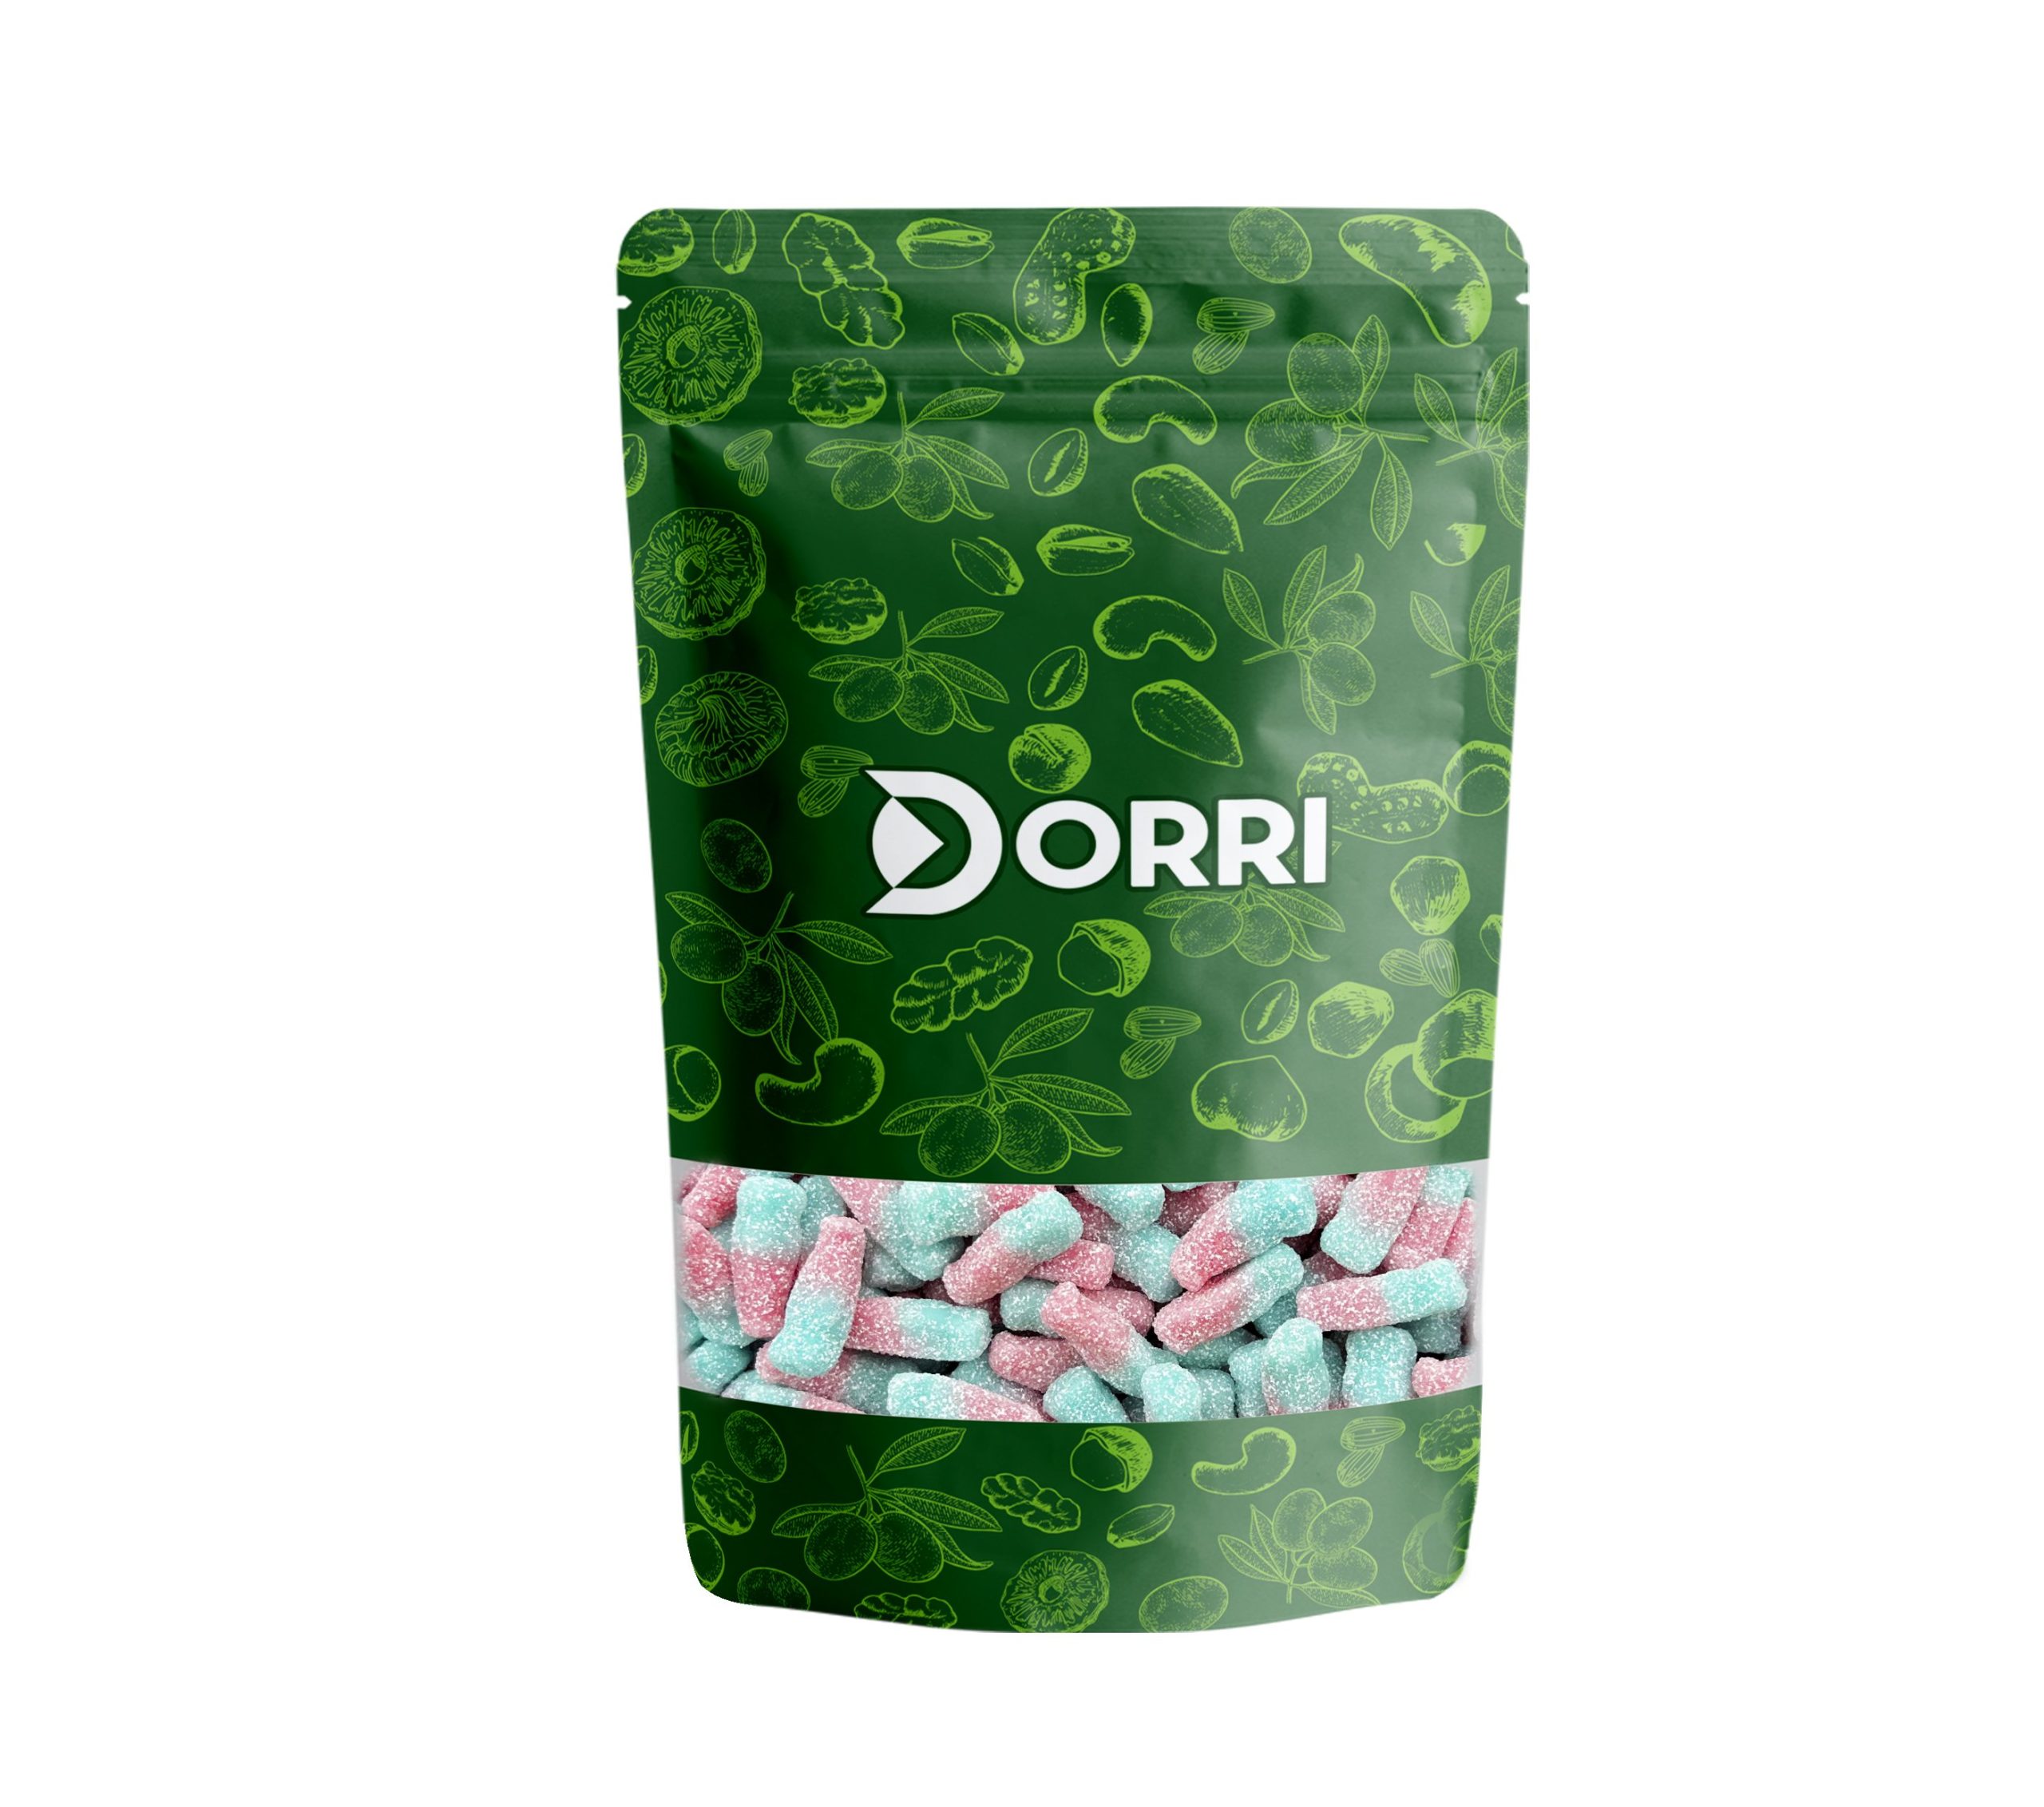 Dorri - Bubblegum Bottles (Fizzy)